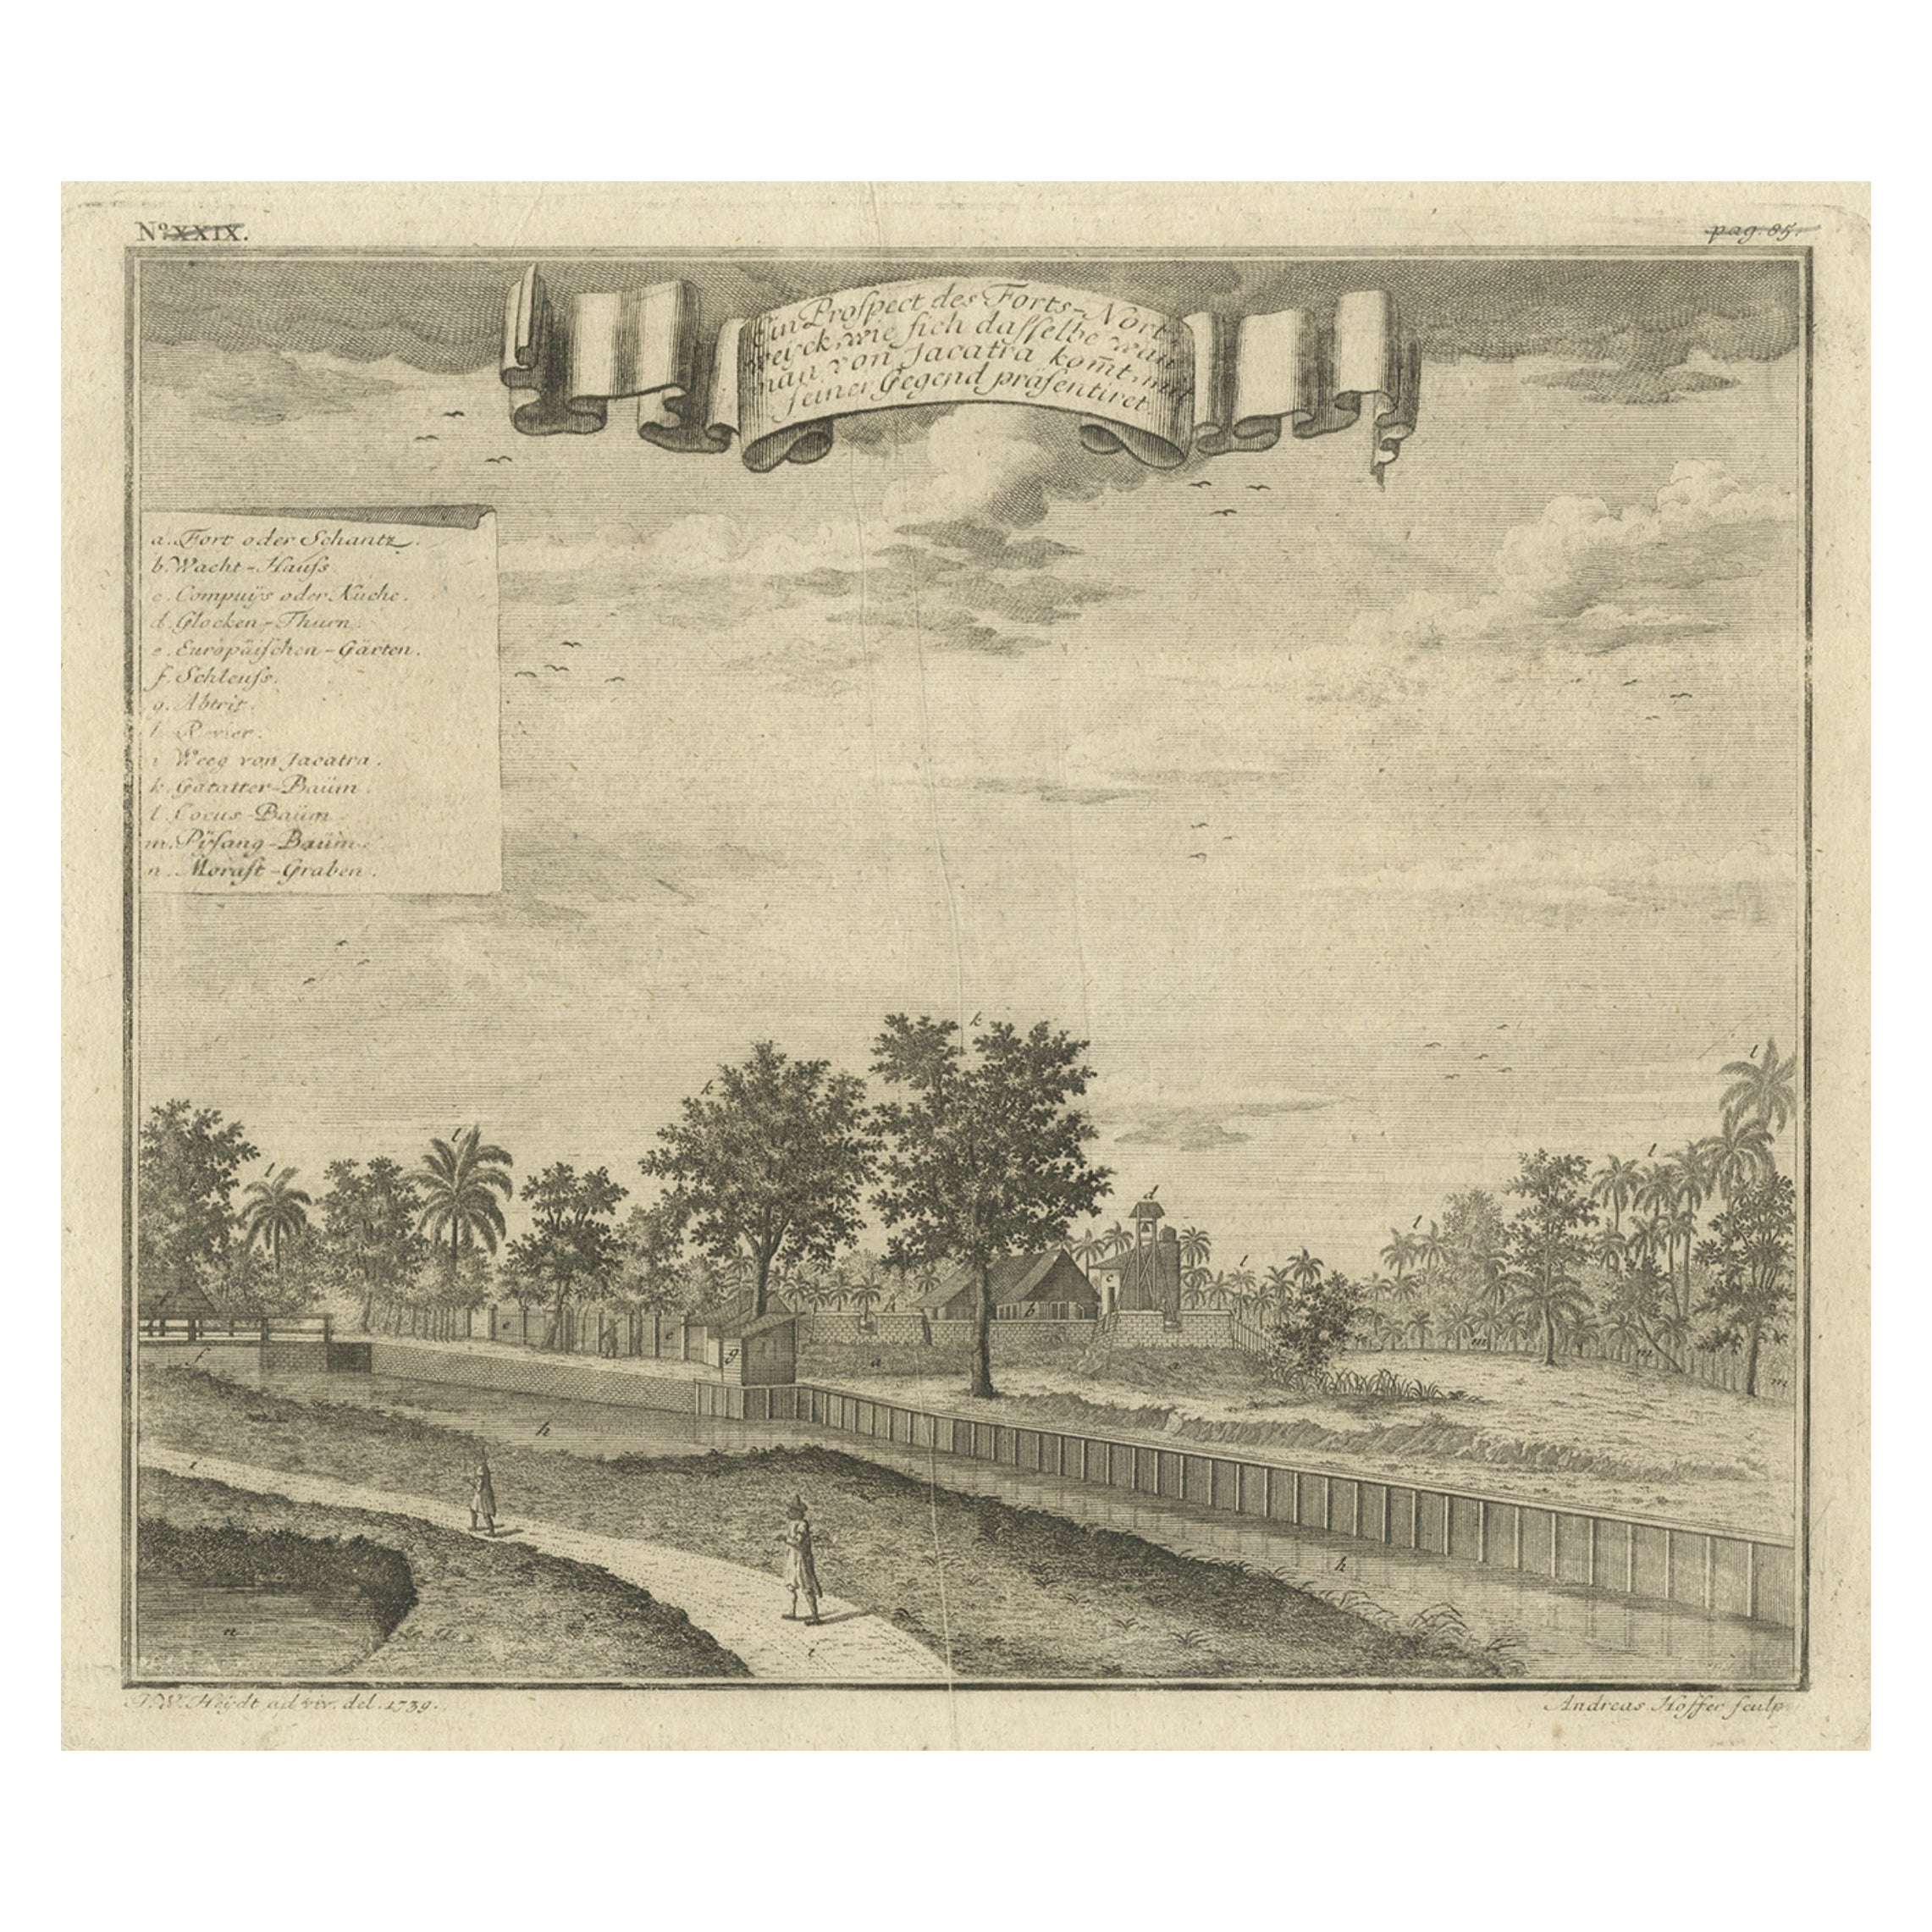 Old Antique Print of Fort Noordwijk, Batavia in the Dutch East Indies, 1739